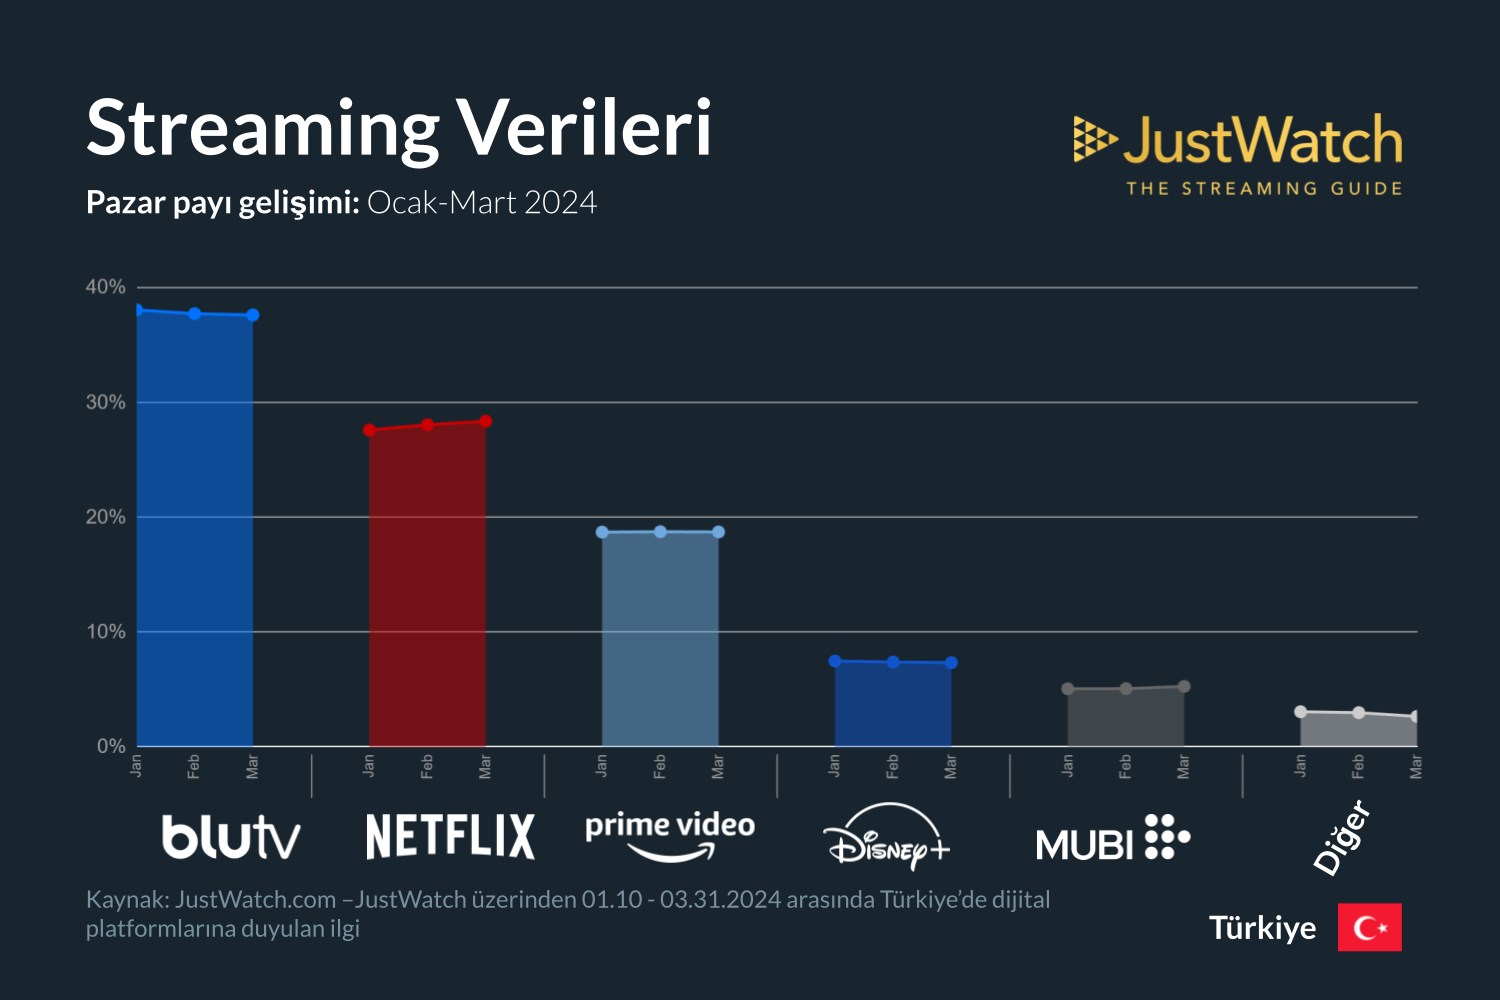 BluTV düşüyor, Netflix yükseliyor